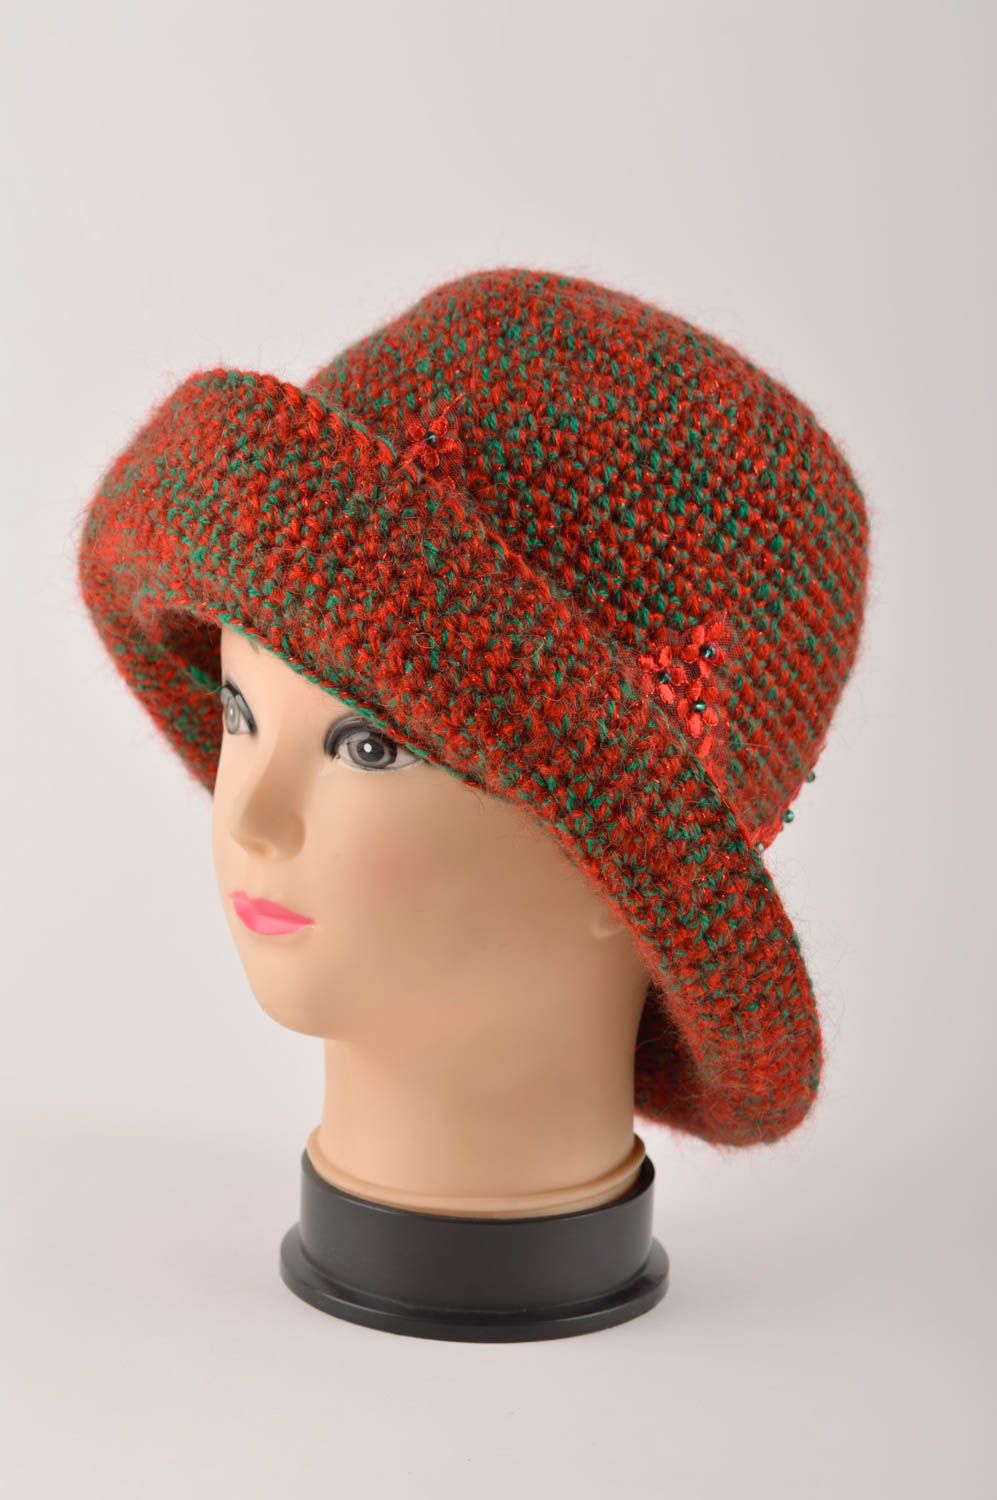 Handmade baby hat knitted baby hat designer headwear unusul hat for girls photo 5